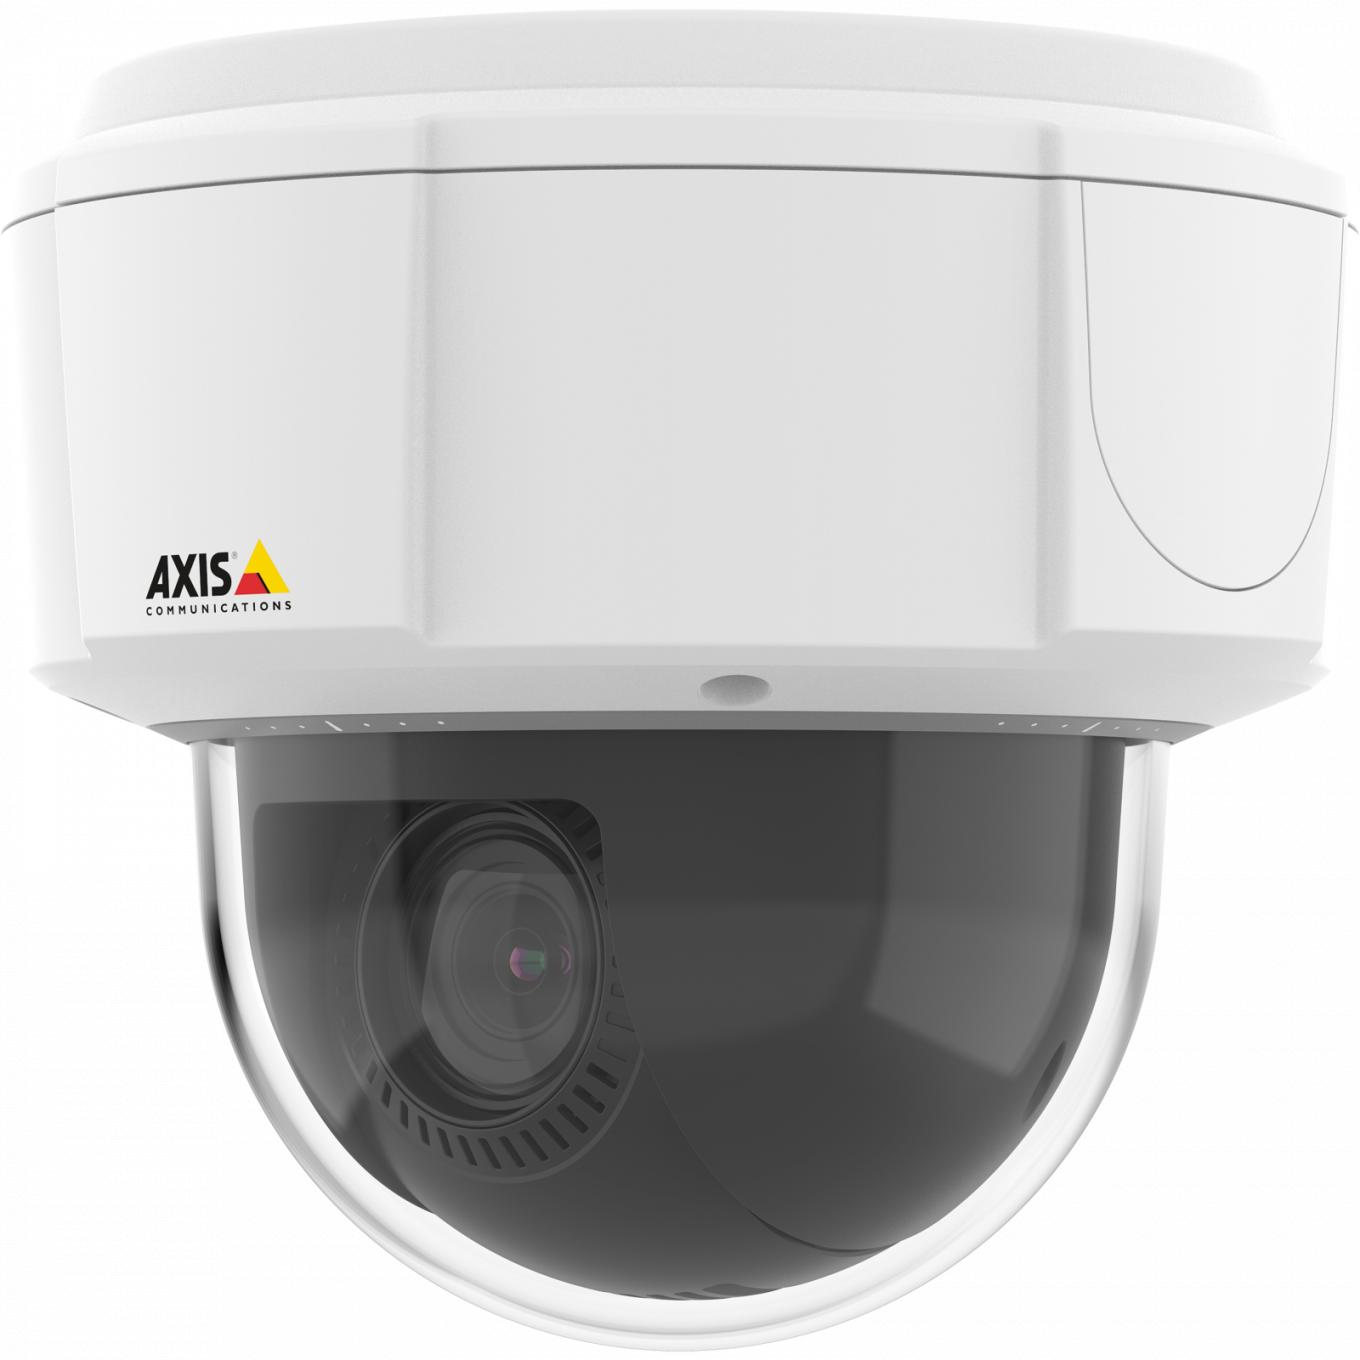 Die Axis IP Camera M5525-E verfügt über HDTV 1080 p und einen 10-fachen optischen Zoom